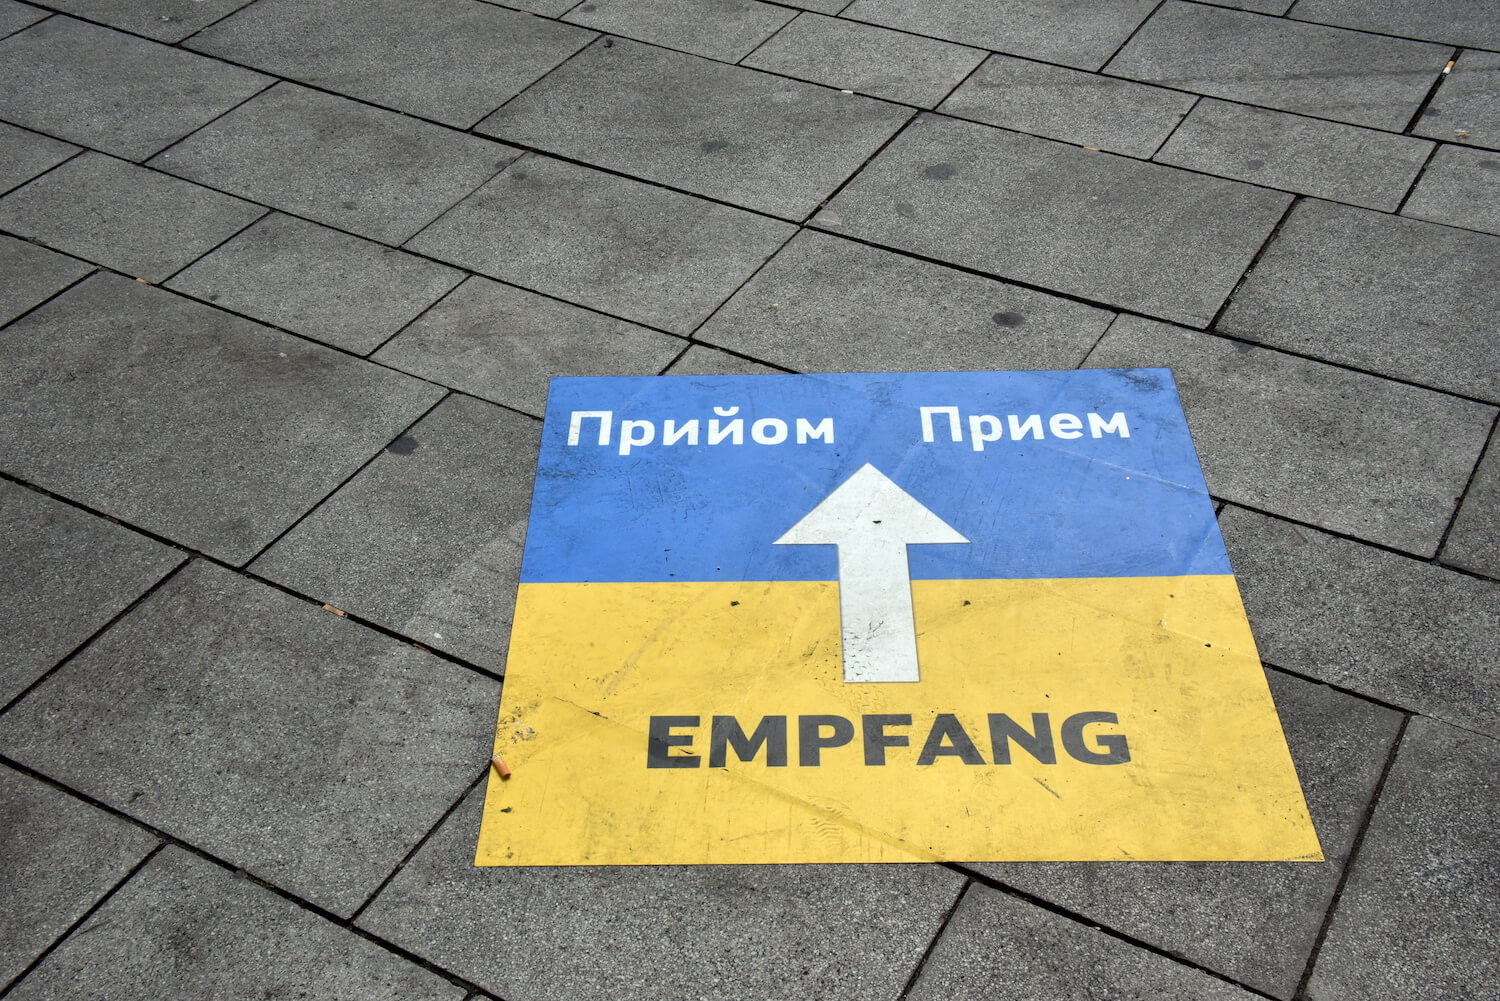 Eine ukrainische Flagge ist auf den Boden gemalt, mit einem Weghinweis zum Empfang für Flüchtlinge.